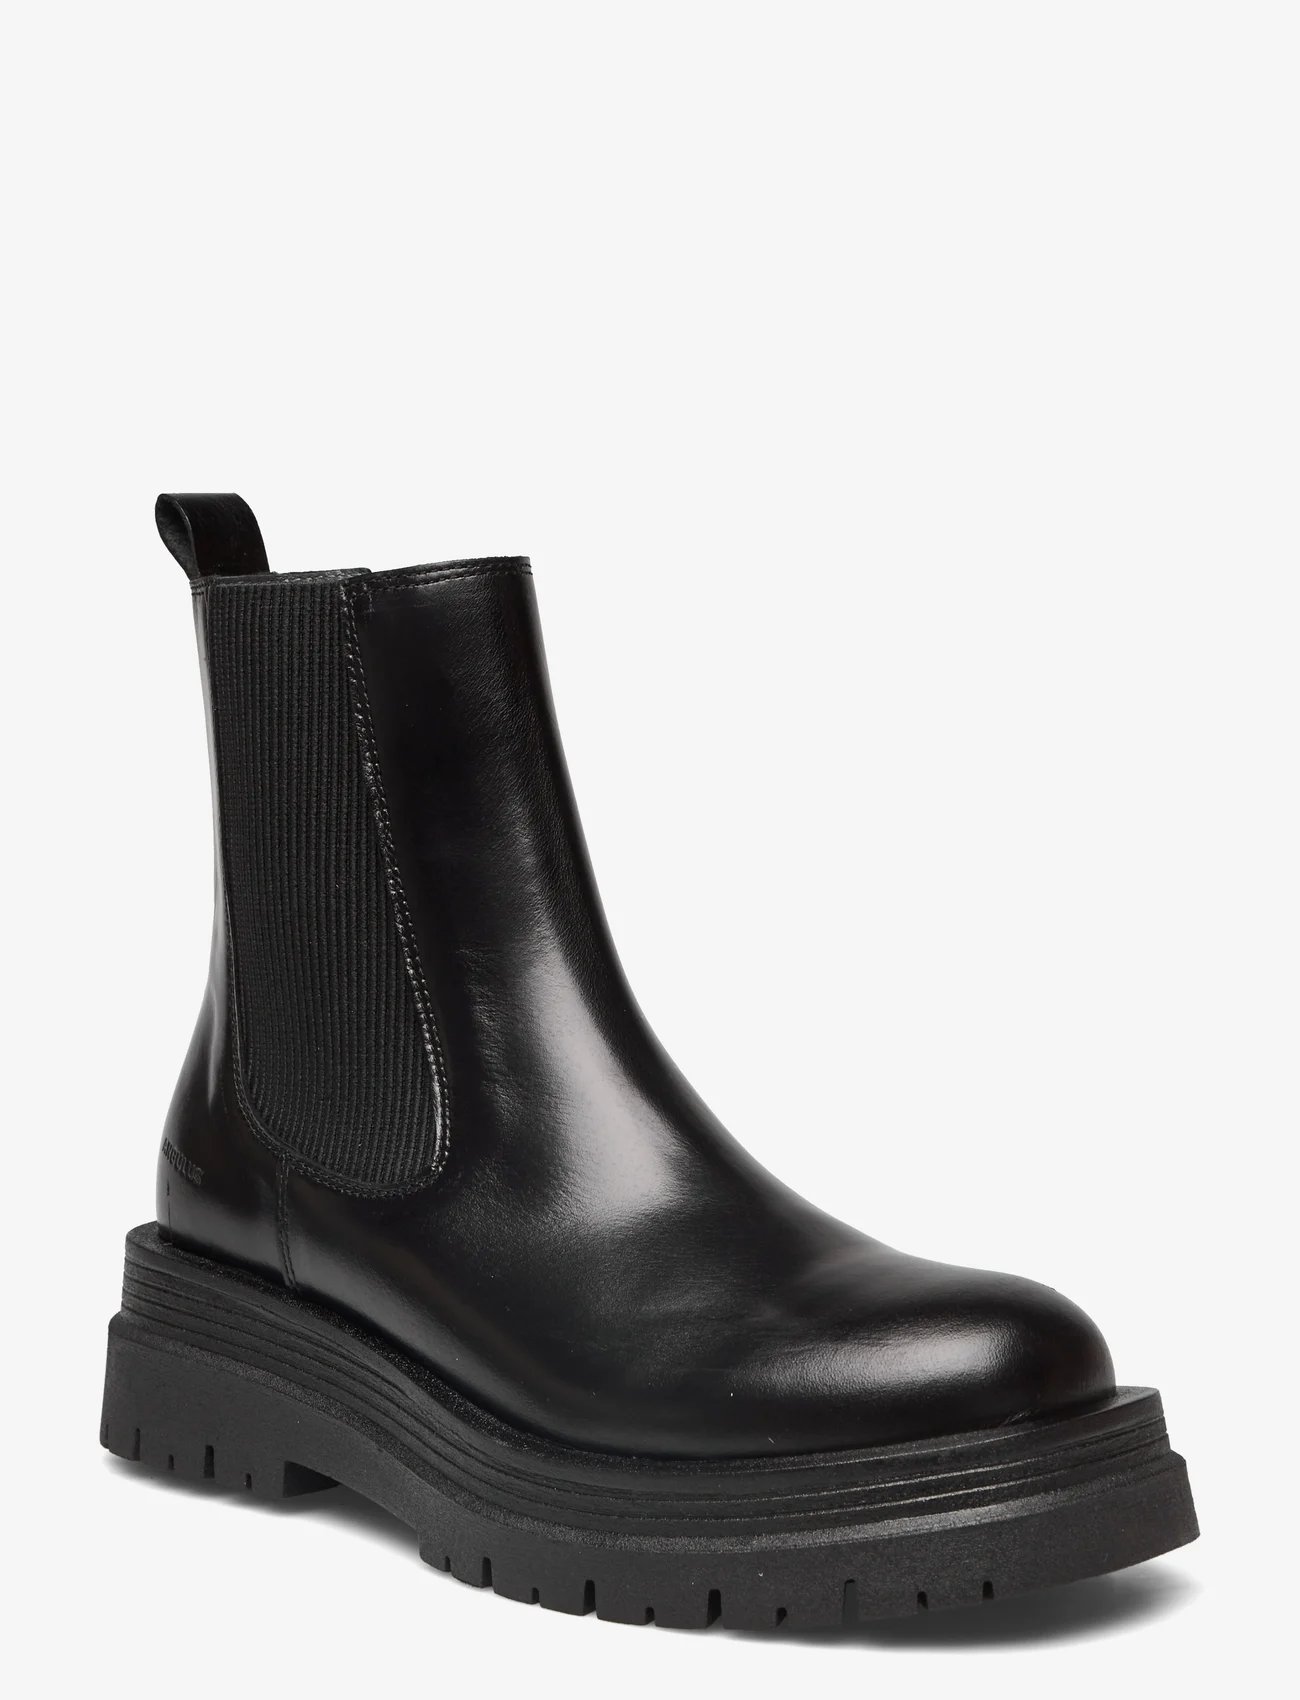 ANGULUS - Boots - flat - chelsea-saapad - 1835/019 black /black - 0